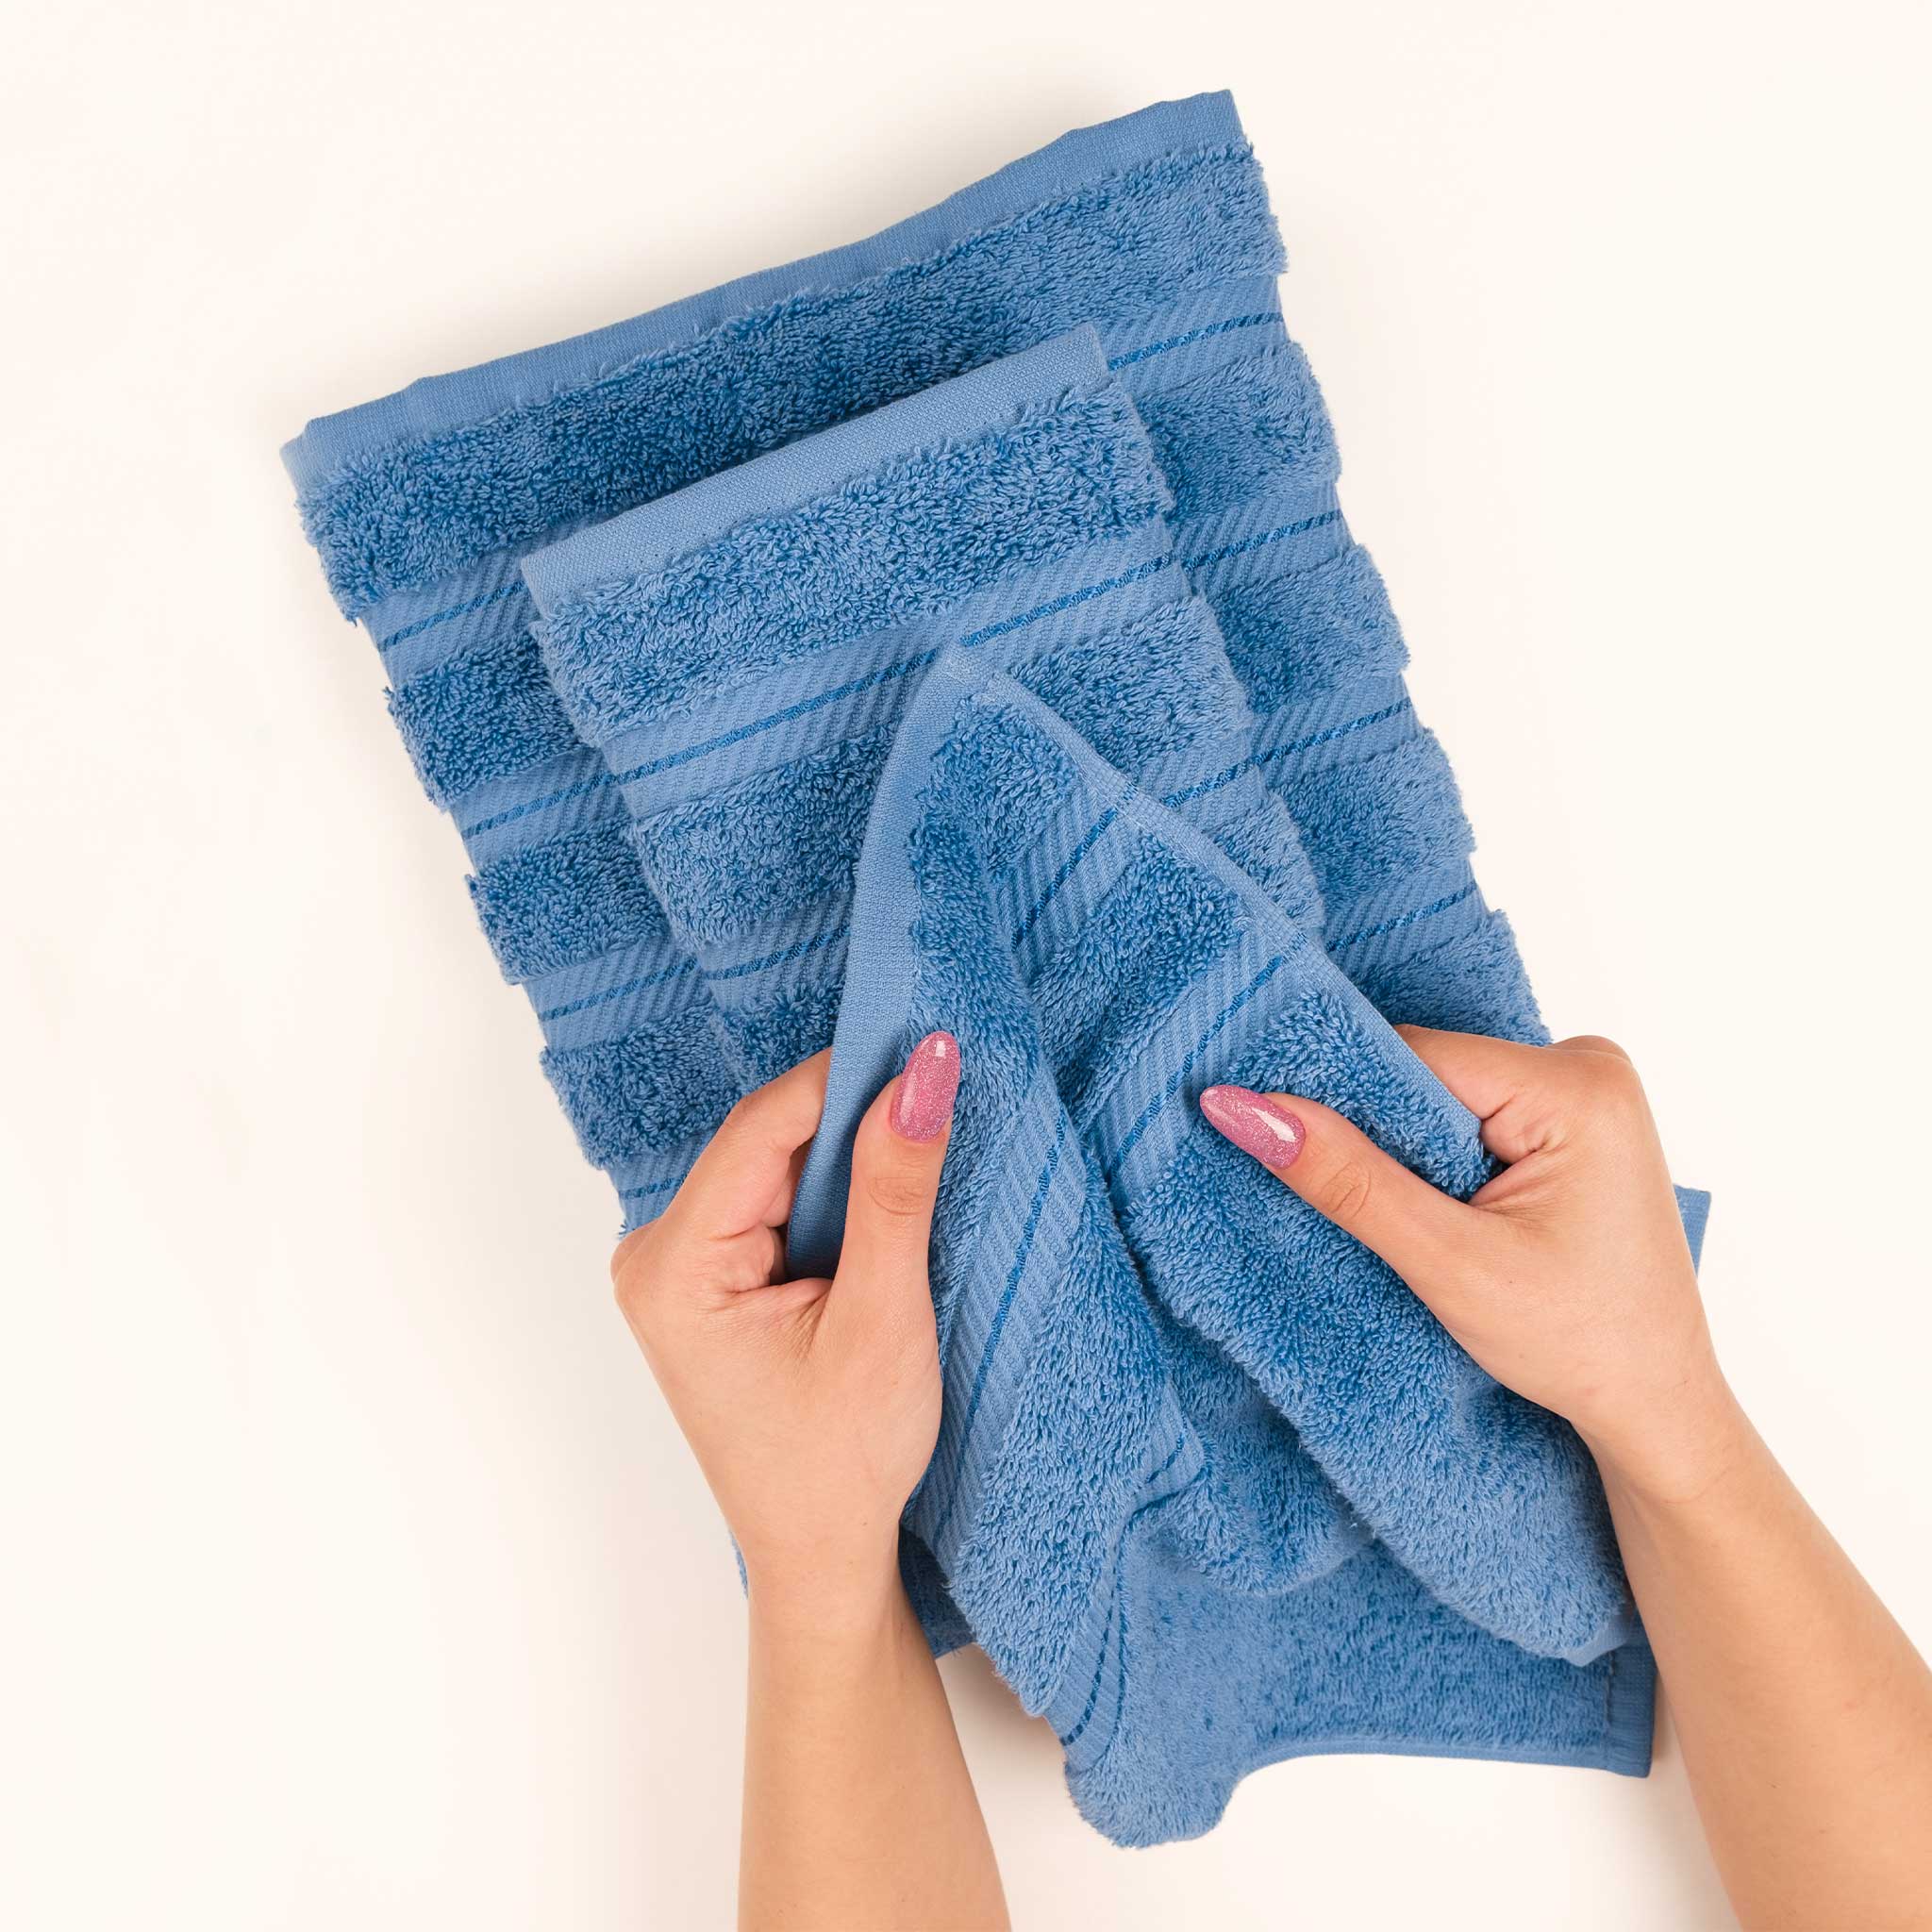 American Soft Linen - 6 Piece Turkish Cotton Bath Towel Set - Electric-Blue - 5